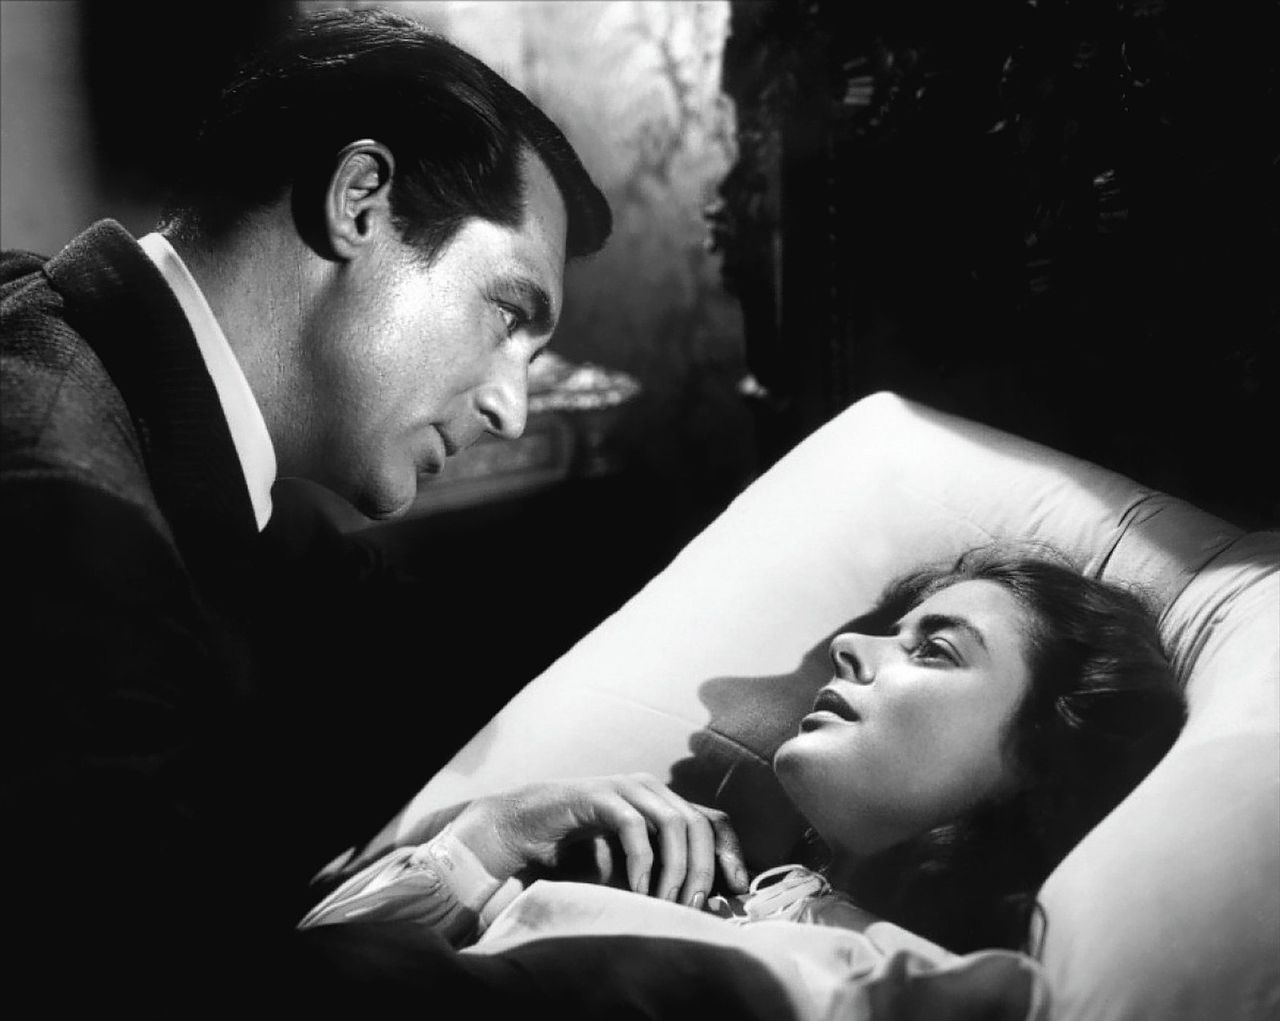 Hitchcocks klassieker ‘Notorious’ (1946), met Cary Grant en Ingrid Bergman.